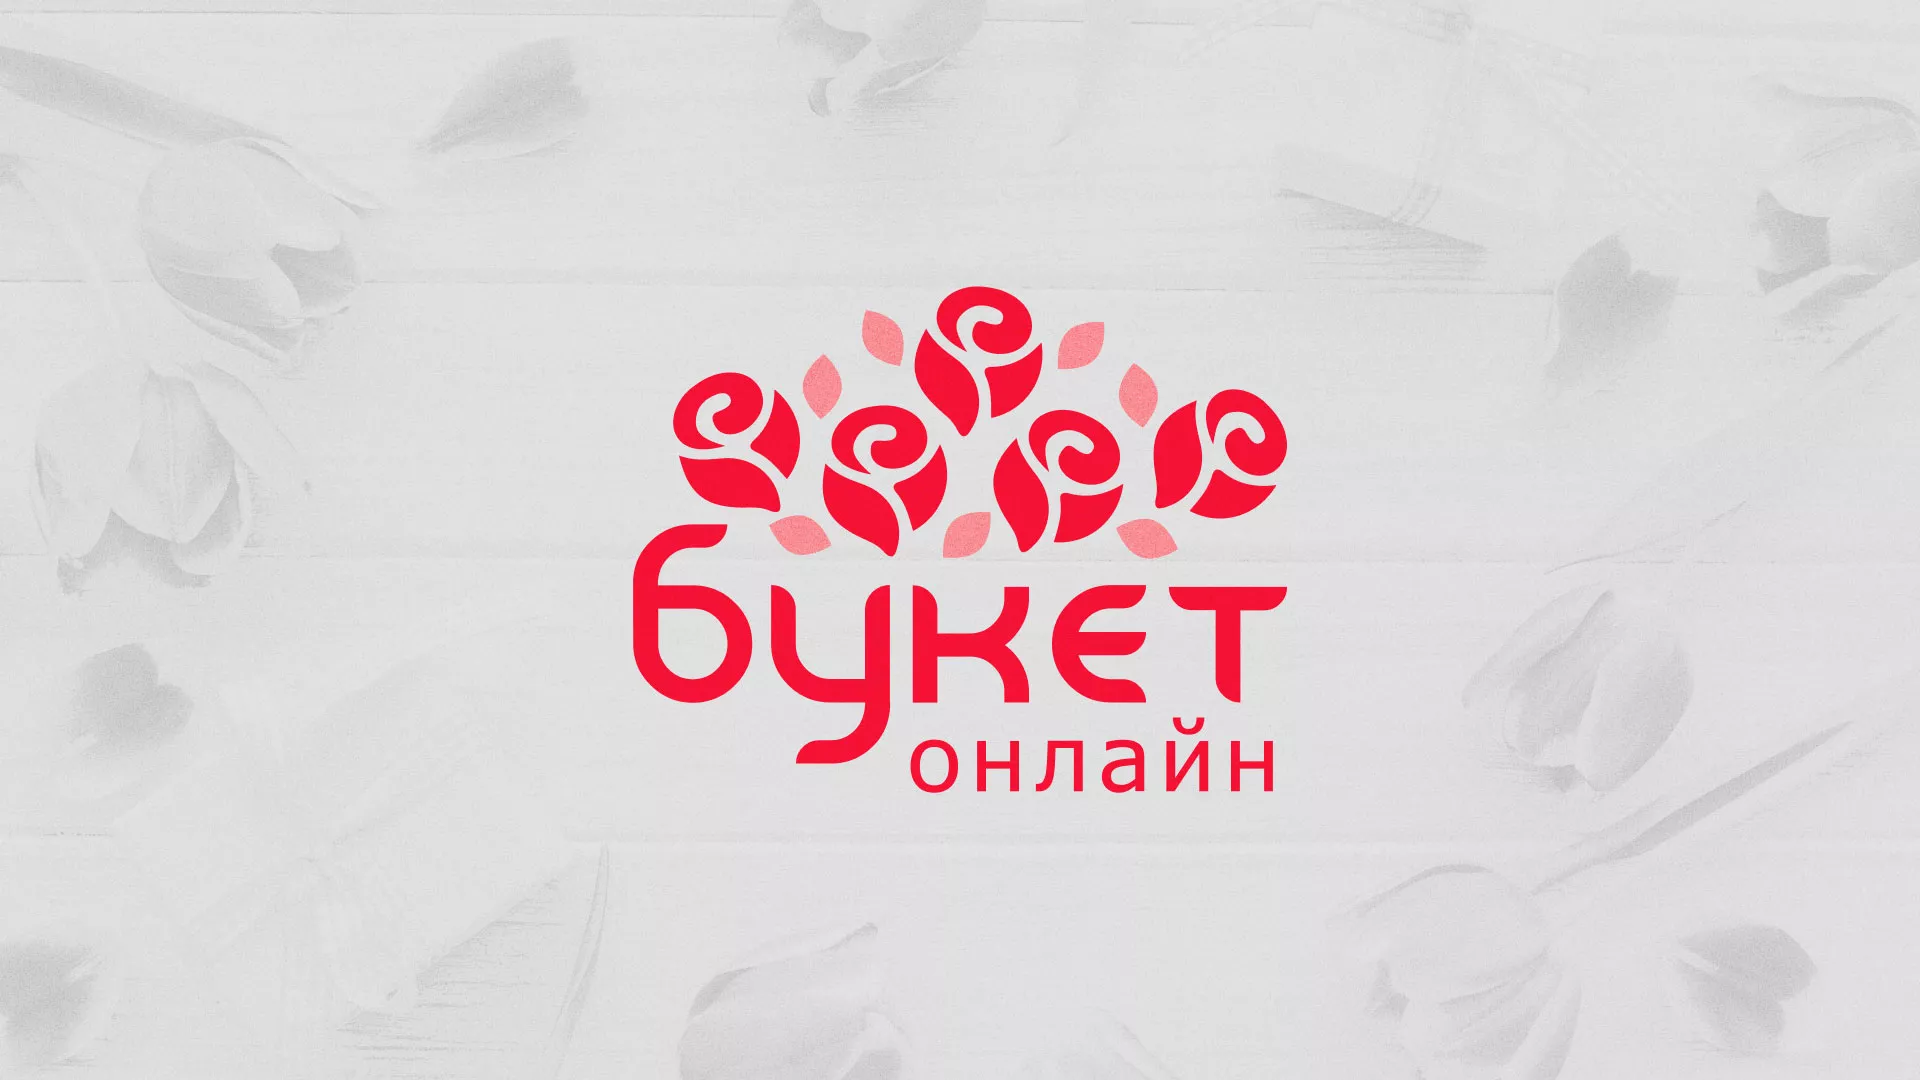 Создание интернет-магазина «Букет-онлайн» по цветам в Шарыпово